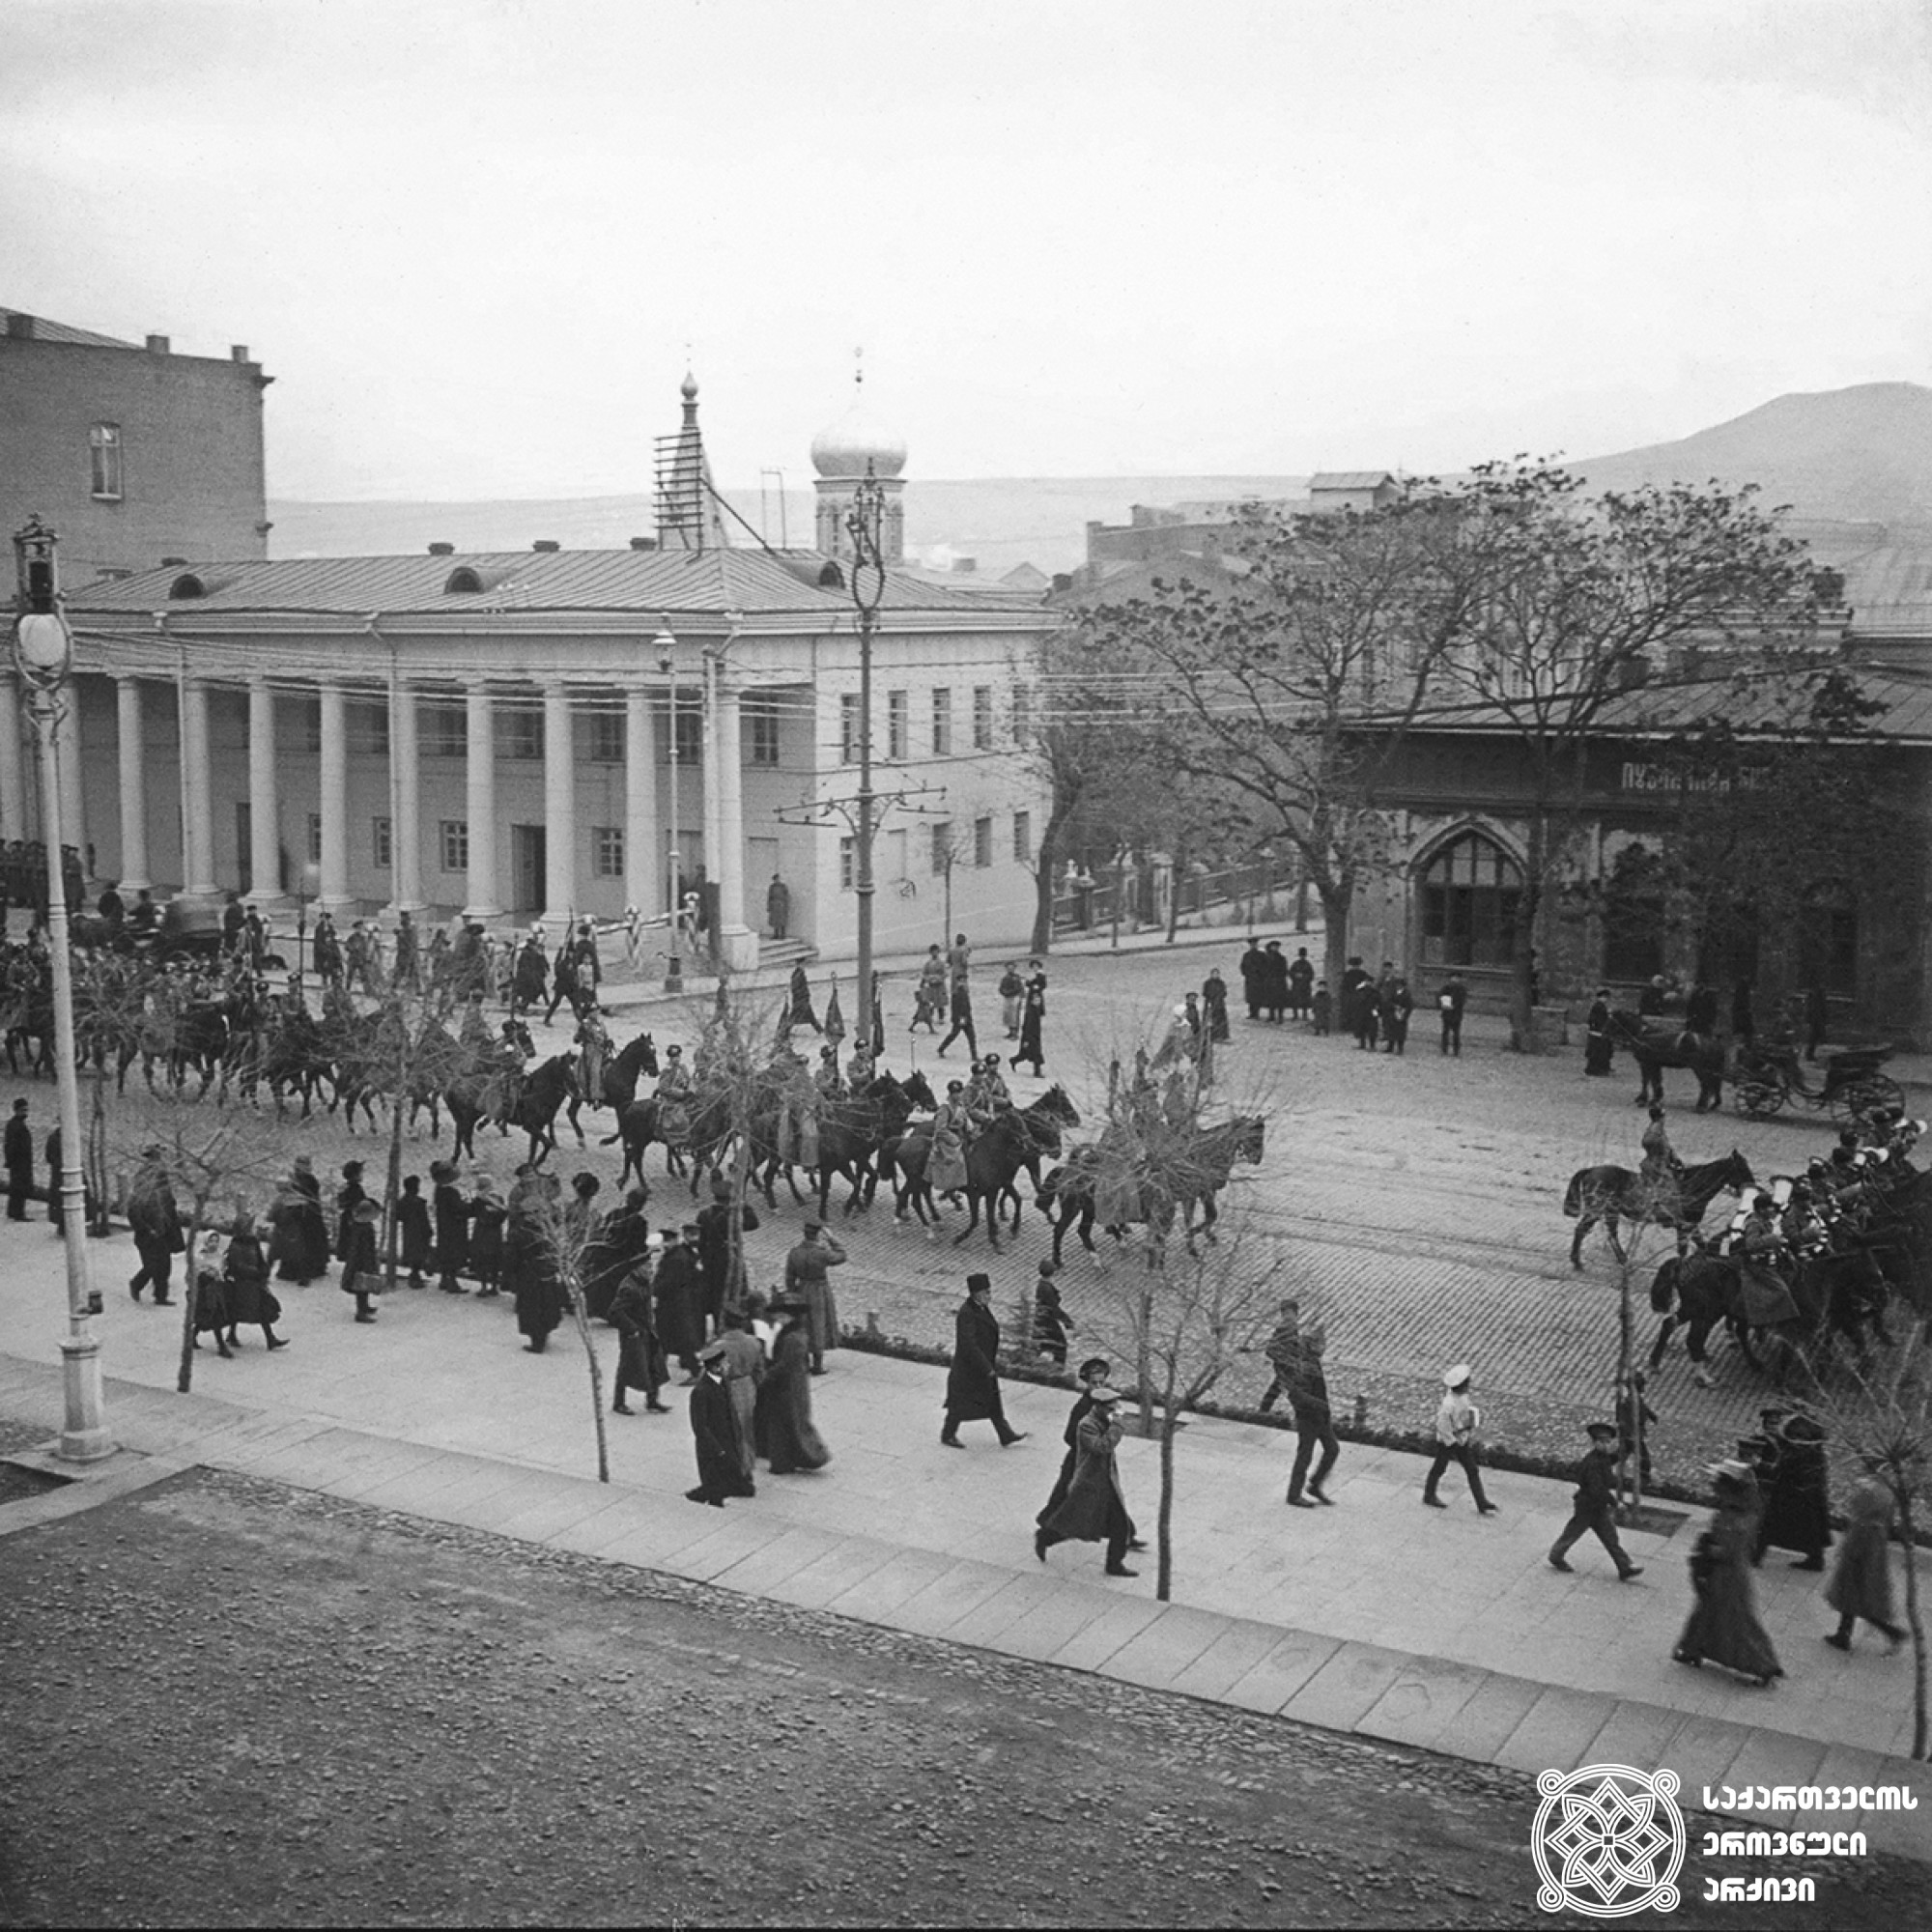 ნიჟეგოროდის პოლკის მარში გოლოვინის პროსპექტზე, თბილისი <br>
1911 წლის 26 ნოემბერი <br>
გიგლო ყარალაშვილის კოლექცია  <br>

March of Nizhny Novgorod Regiment on Golovin Avenue, Tbilisi <br>
November 26, 1911  <br>
Giglo Karalashvili collection